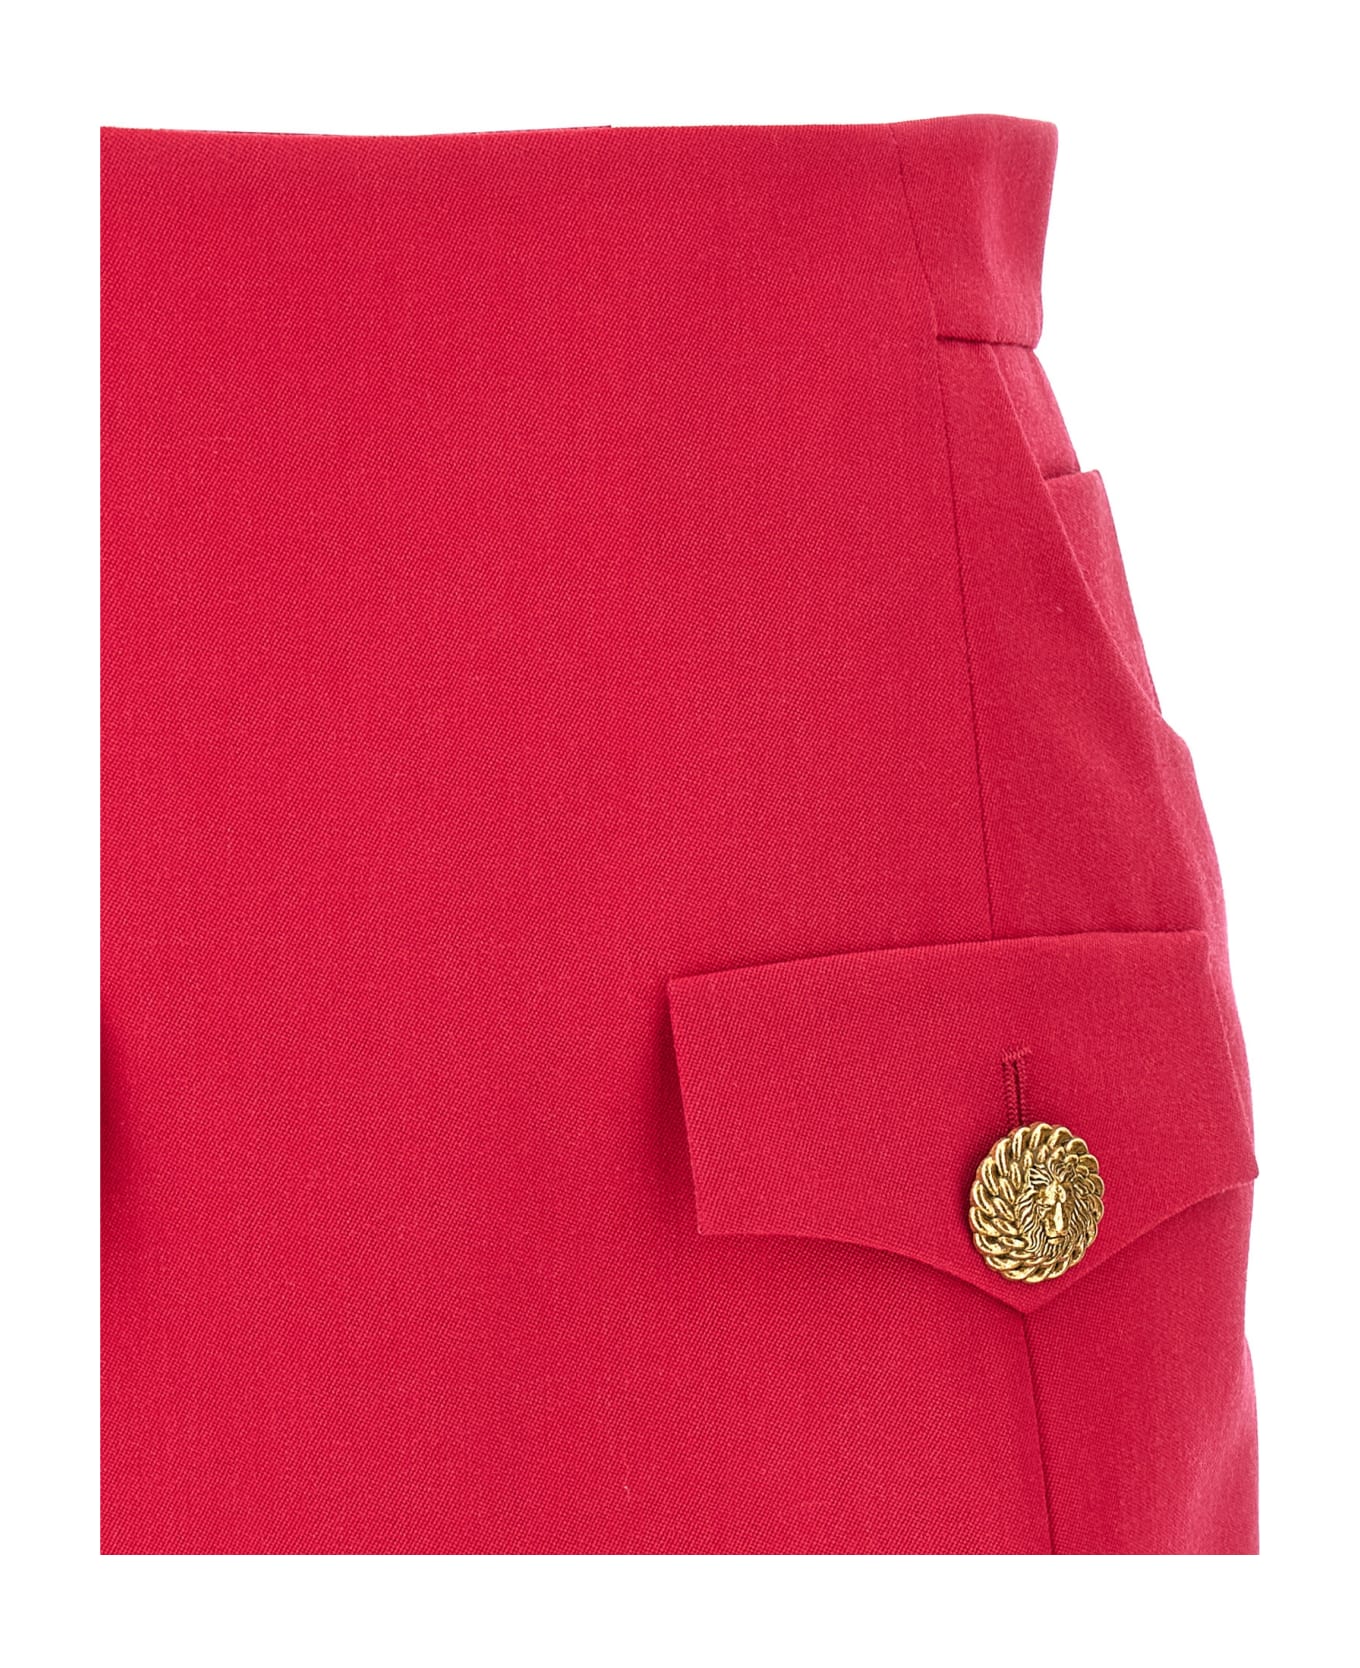 Balmain Mini Skirt - Fuchsia